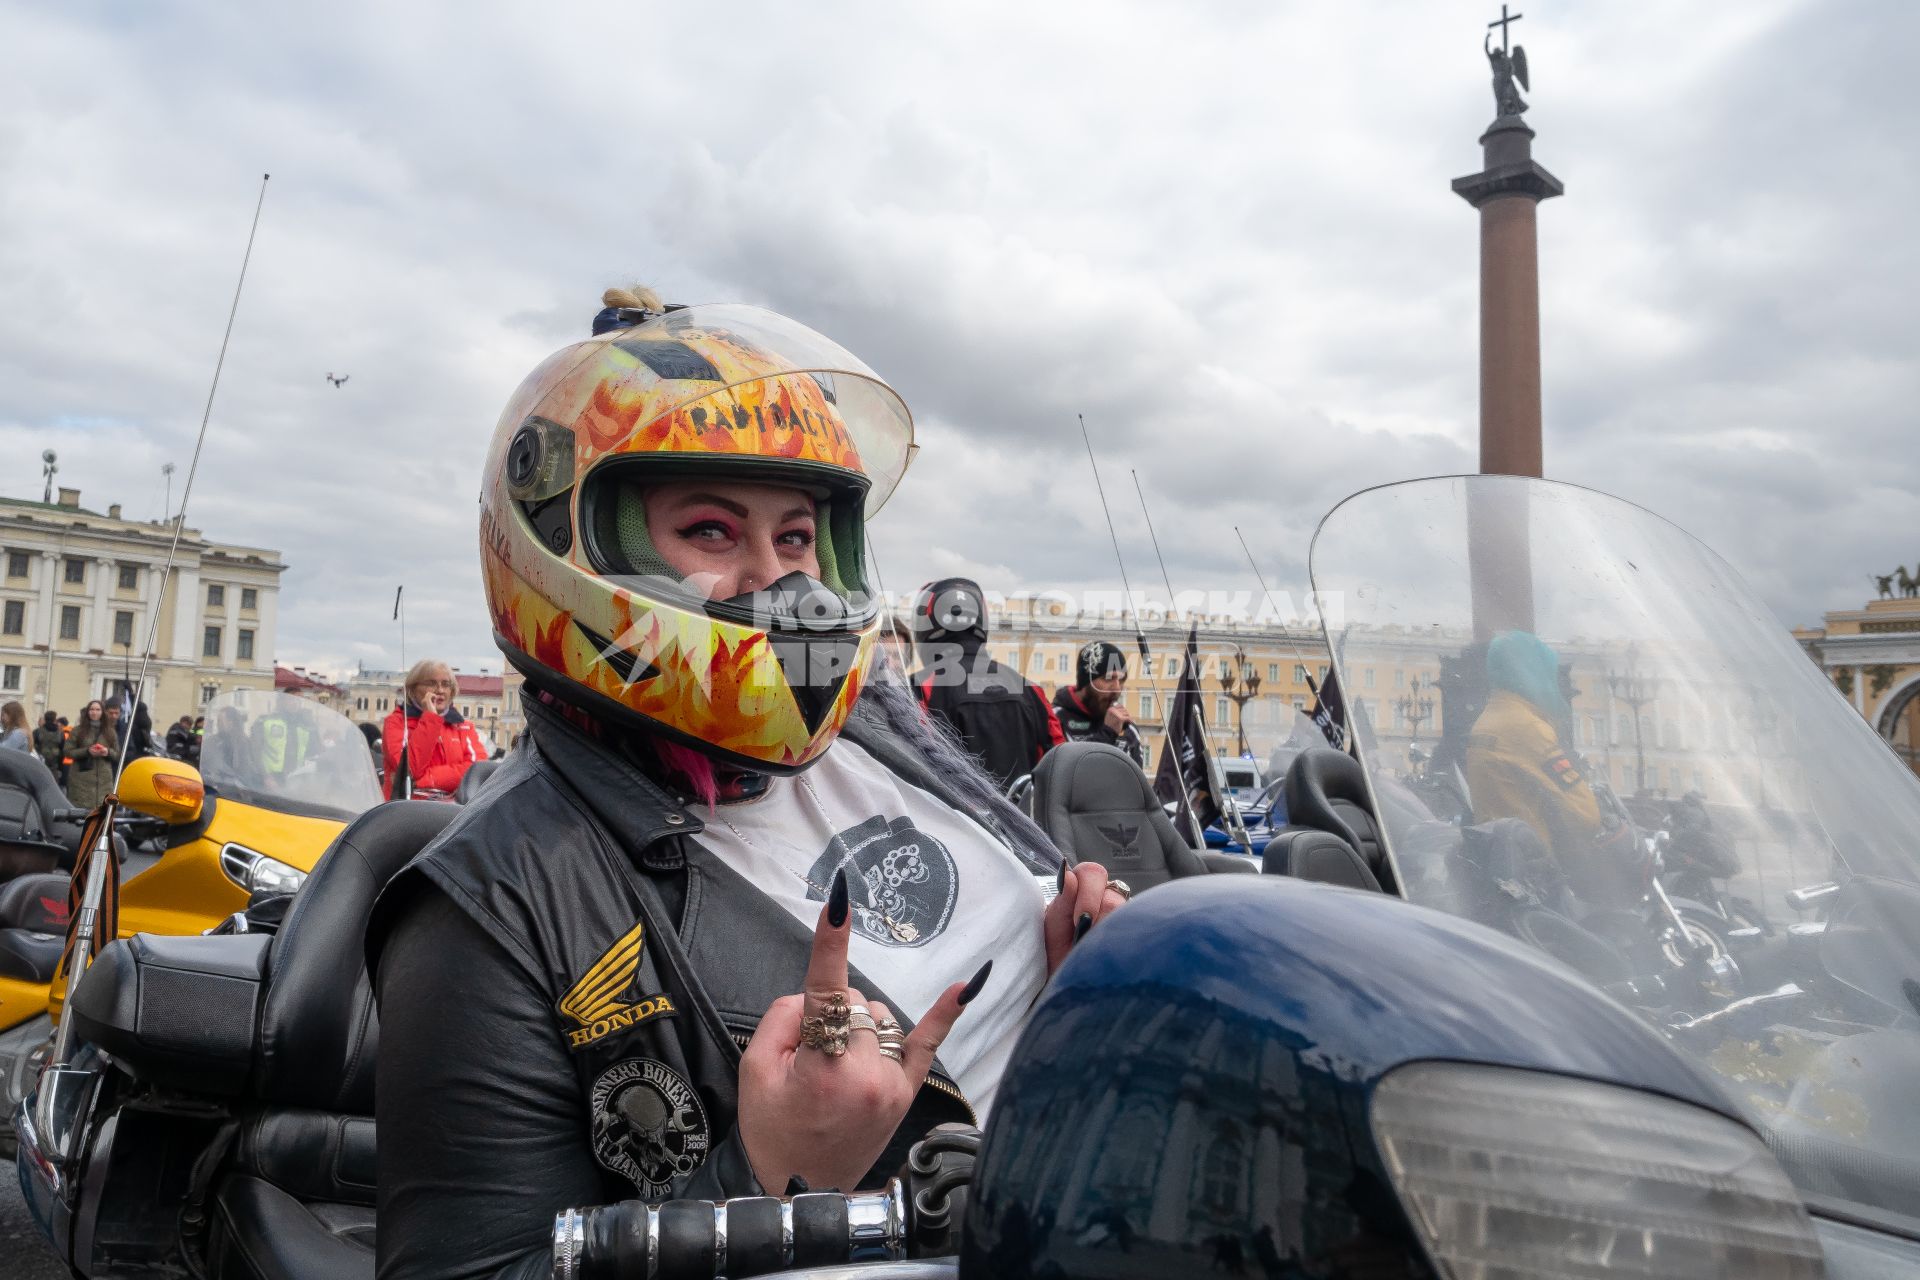 Санкт-Петербург. Байкер перед началом мотопарада, посвященного открытию сезона, на Дворцовой площади.